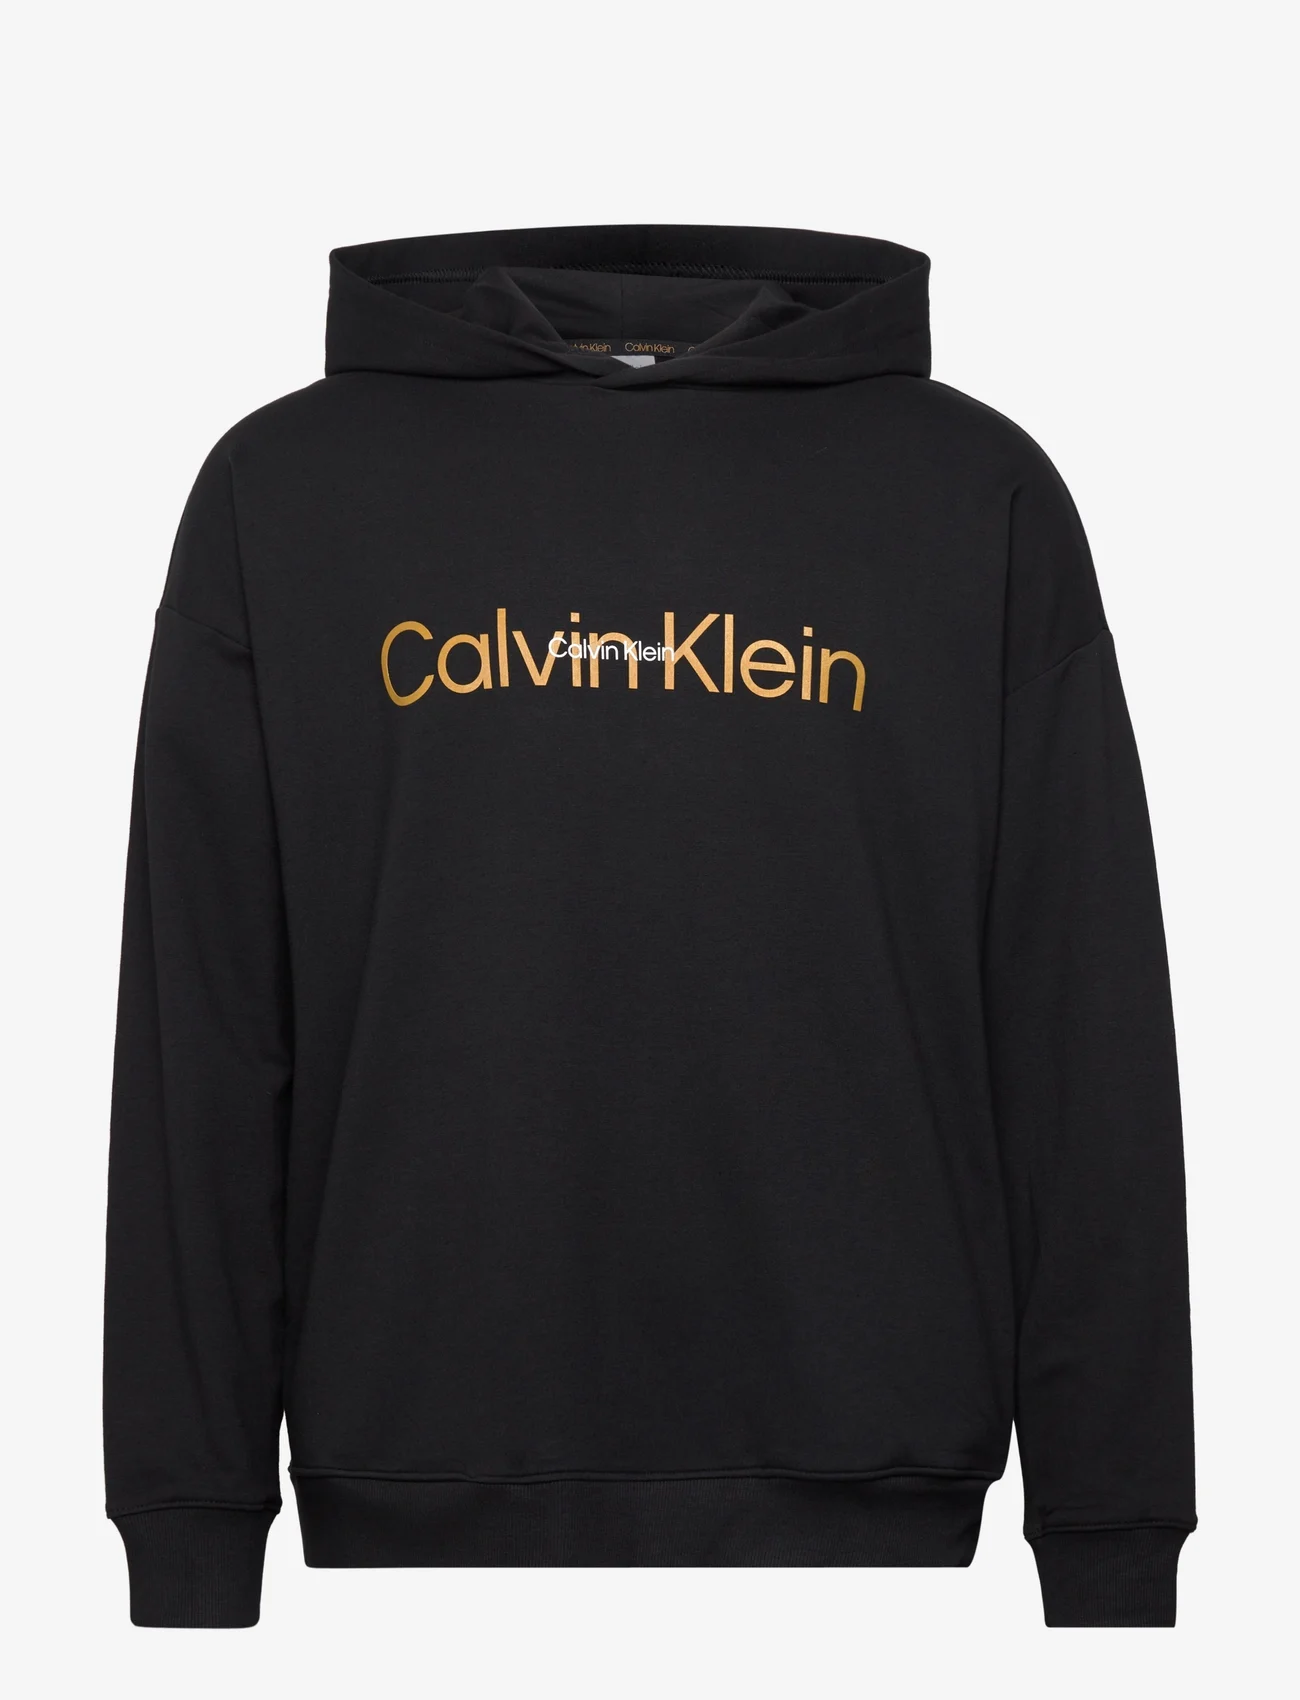 Black) - Calvin Klein L/s Hoodie - 6.989,50 kr